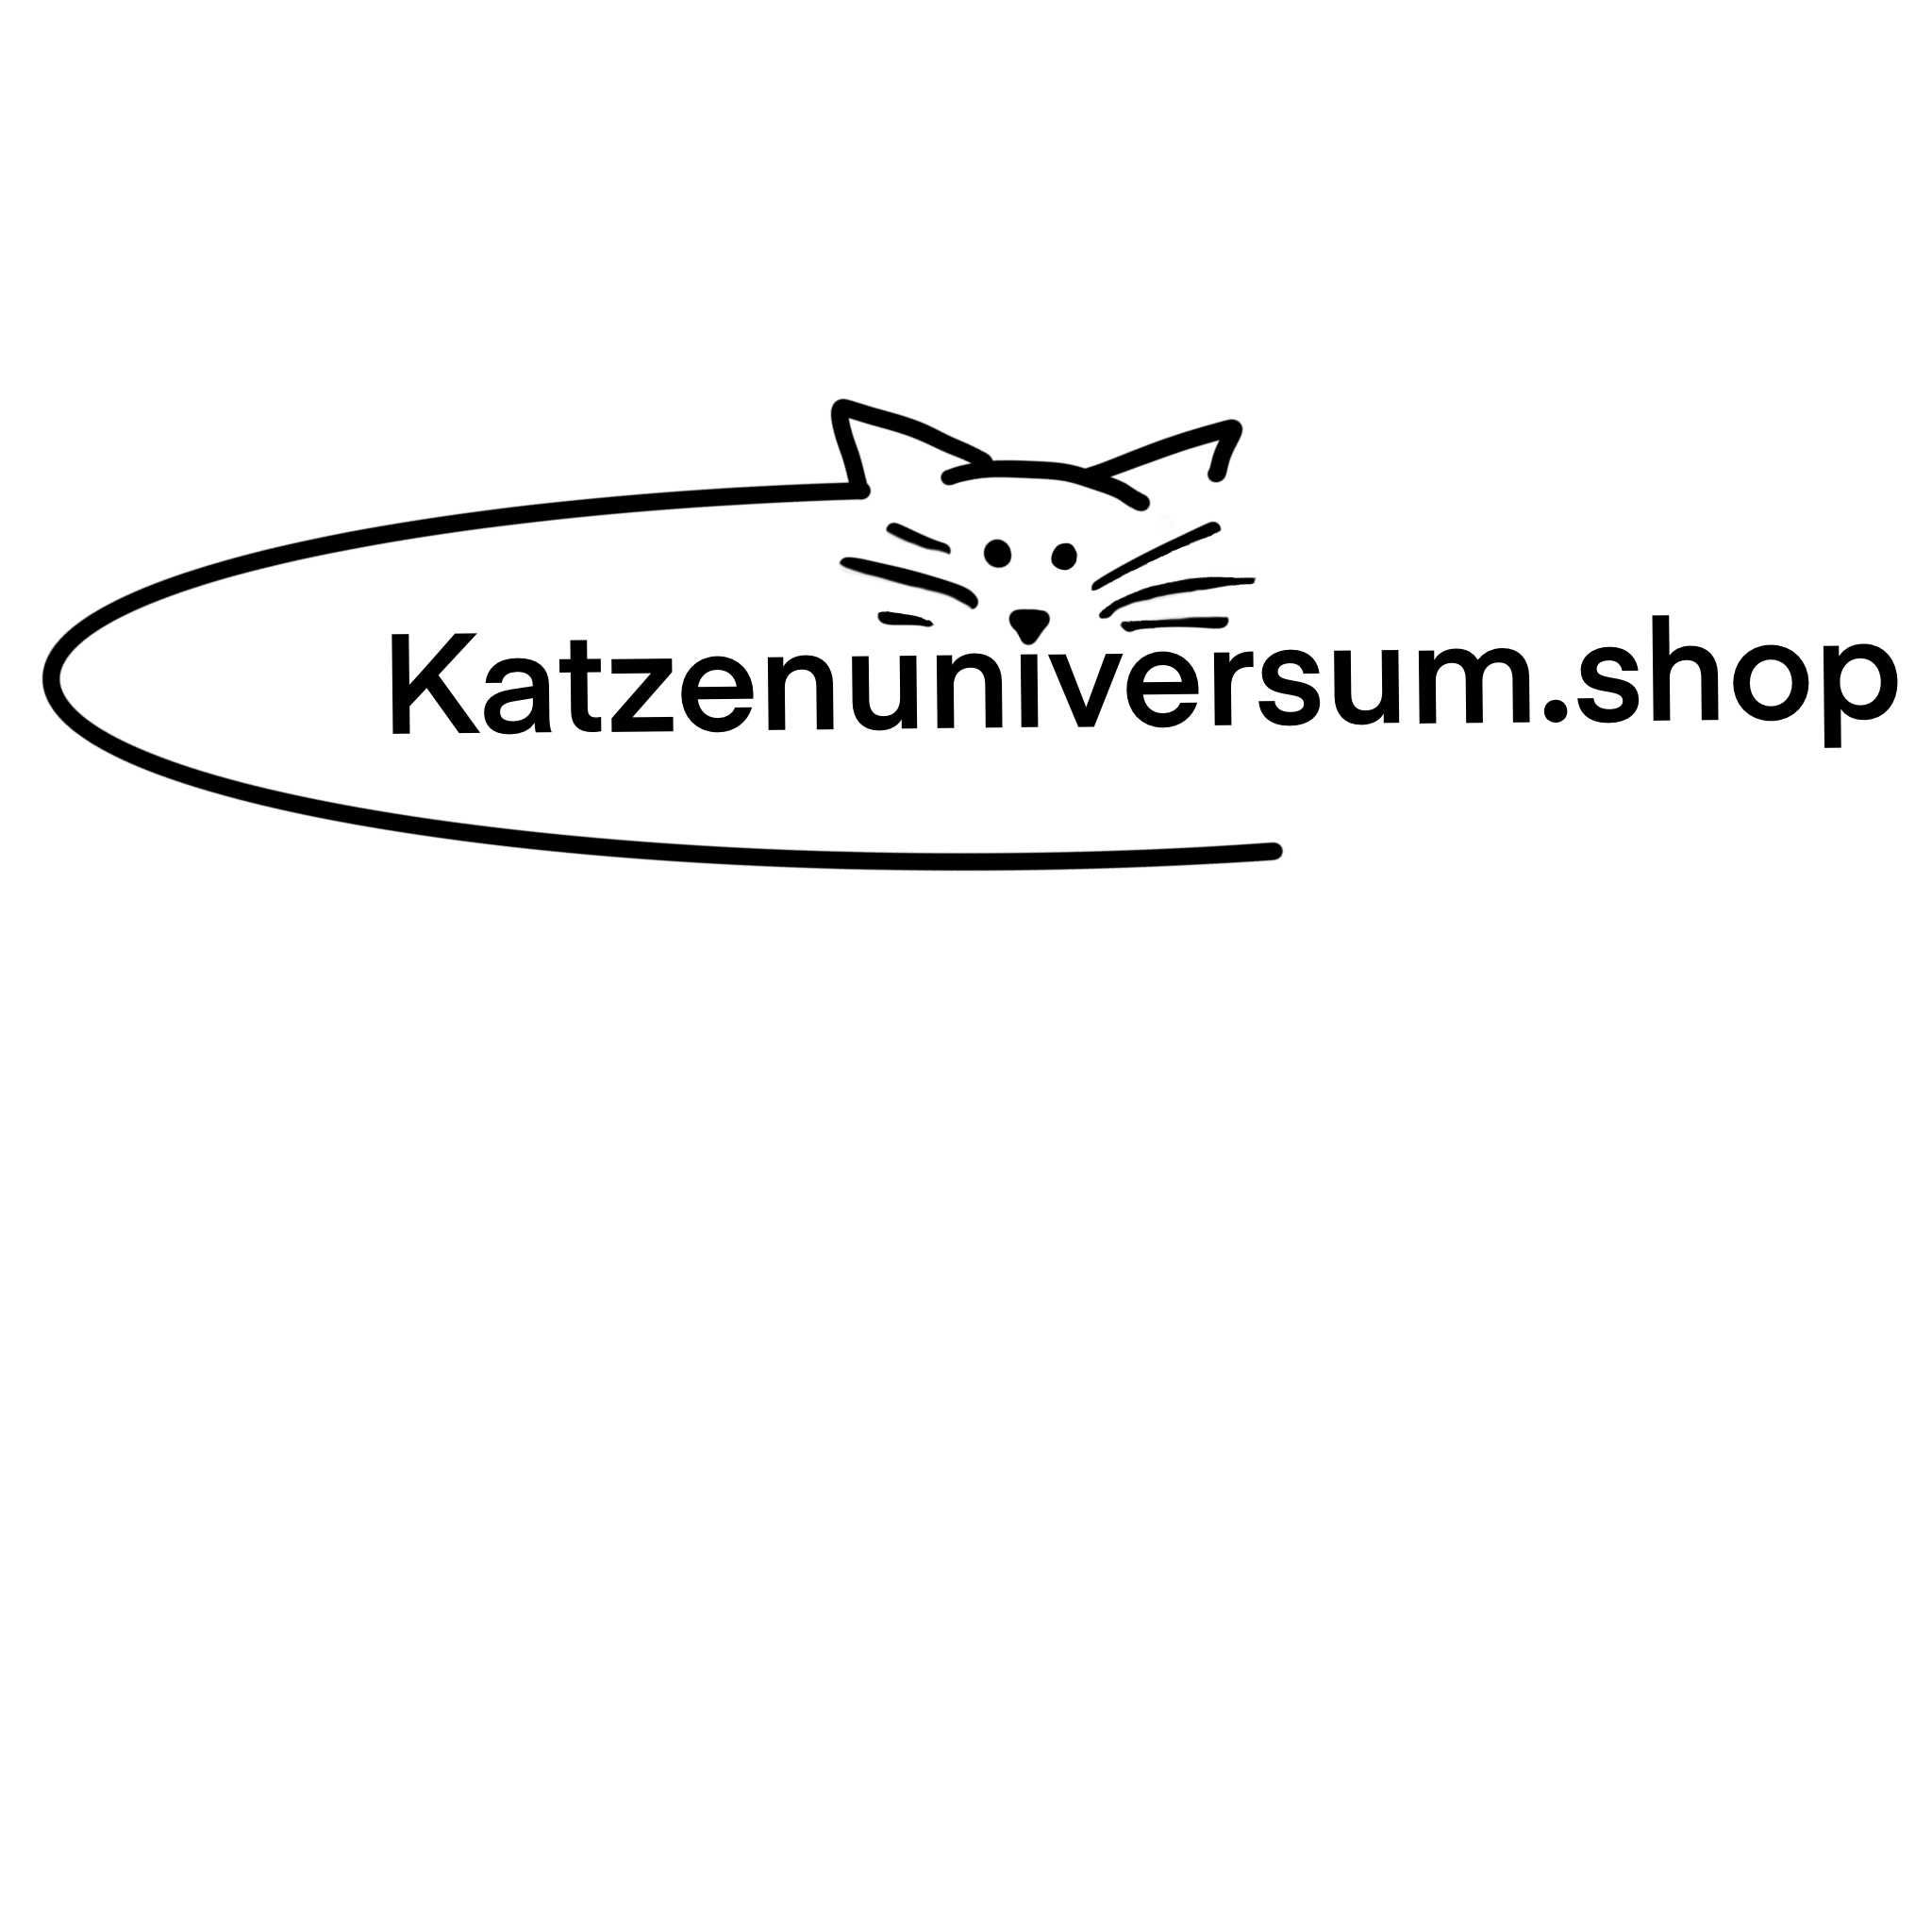 Katzenuniversum.shop